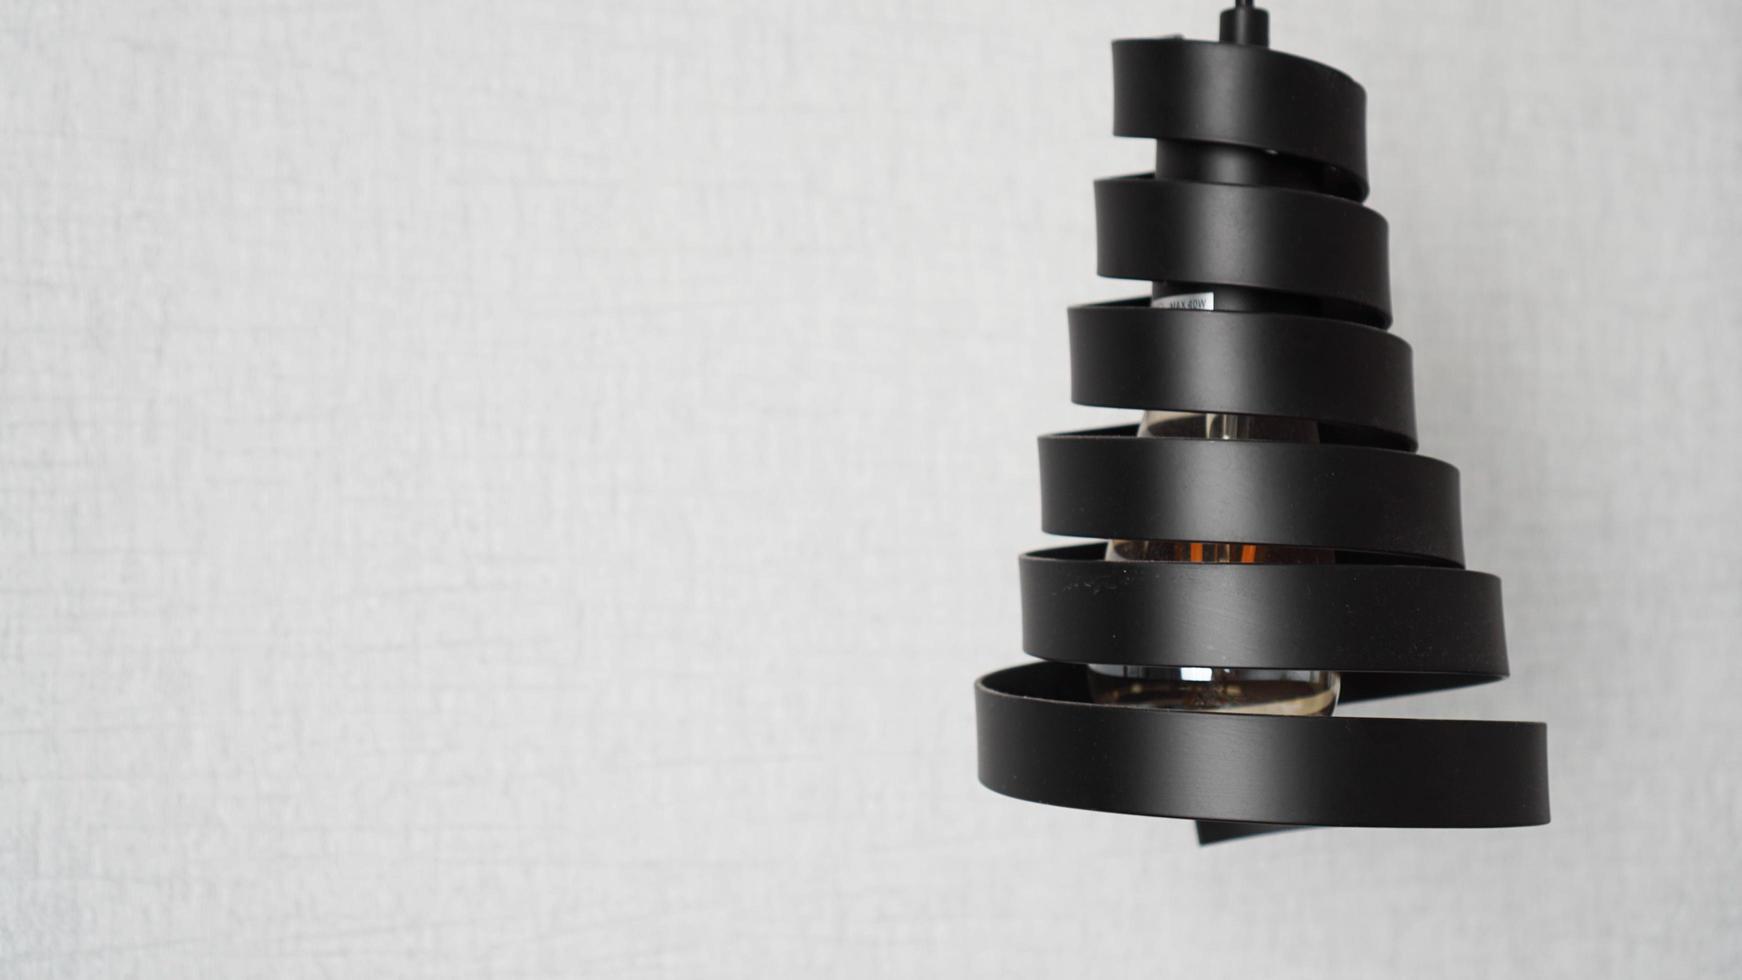 un moderno candelabro tipo loft hecho de espiral de metal negro foto